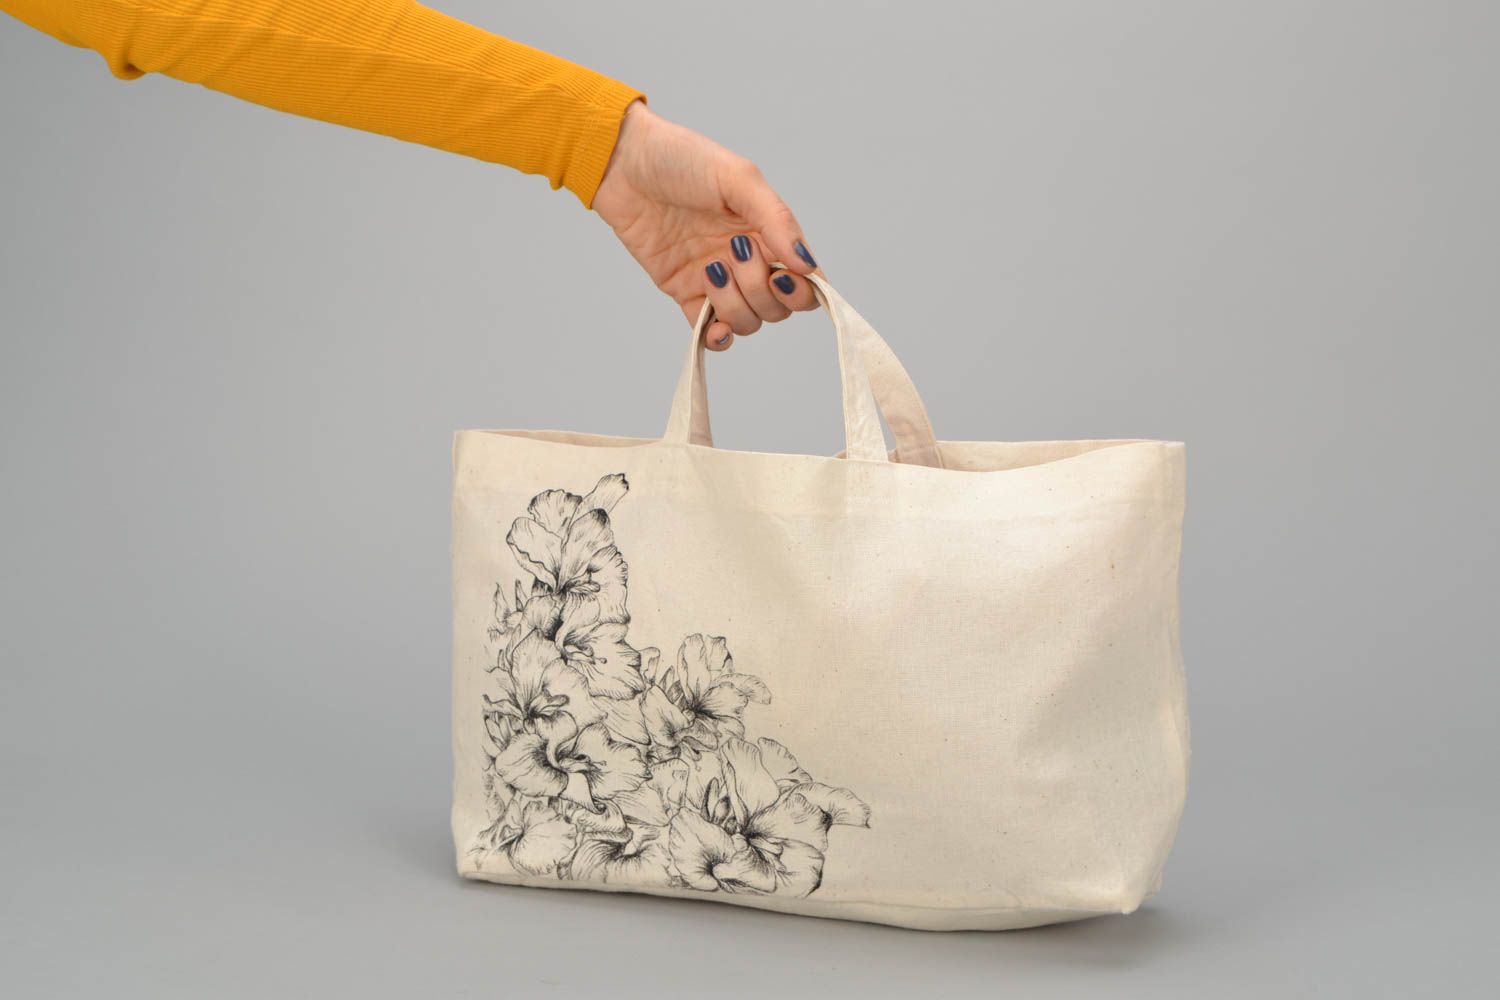 Textil Handtasche in Weiß foto 2